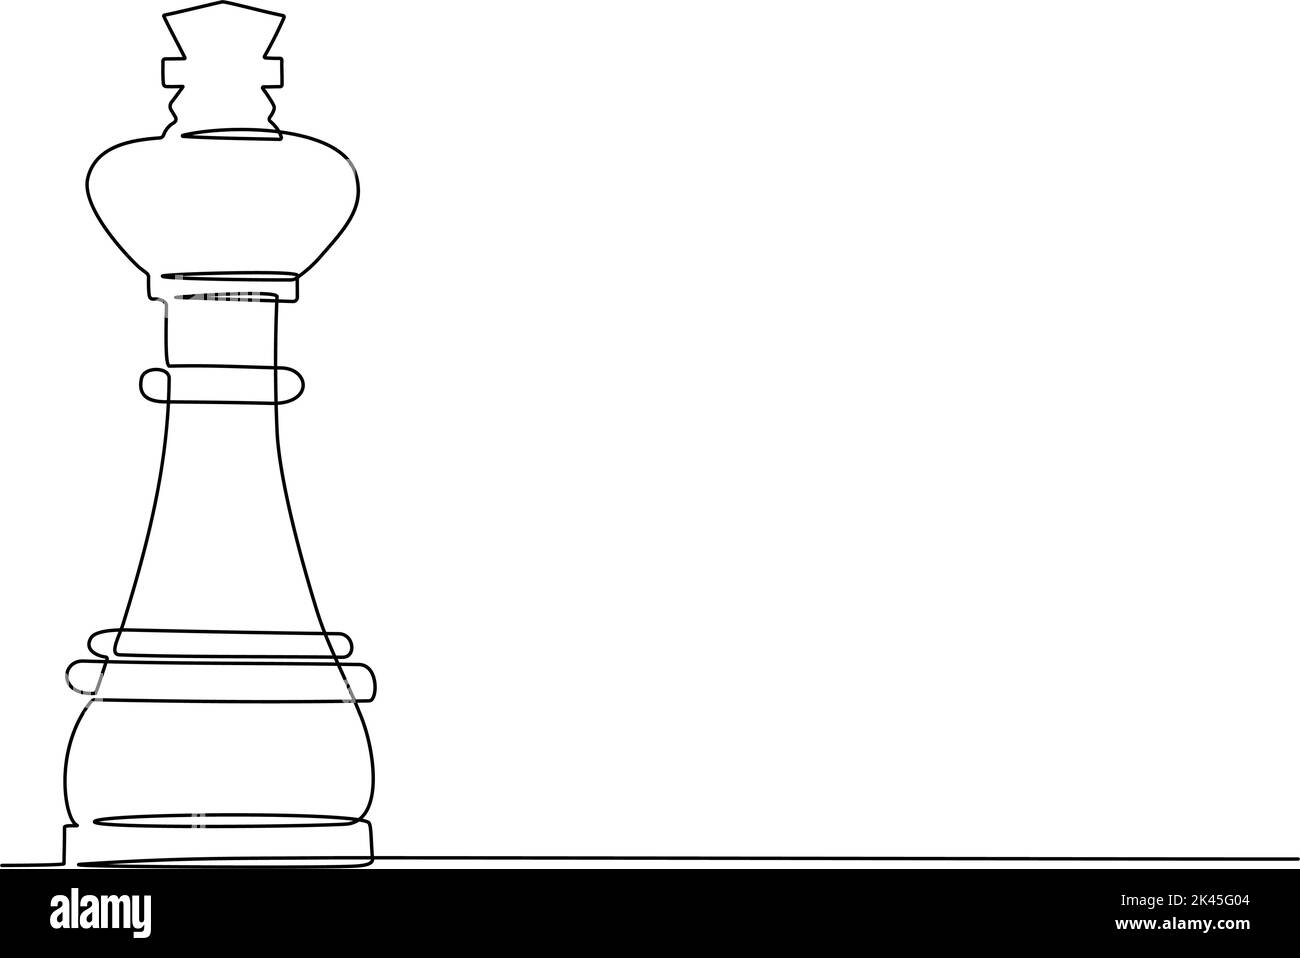 Fortlaufende einzeilige Zeichnung des Schachfiguren-Königs. Vektorgrafik Stock Vektor